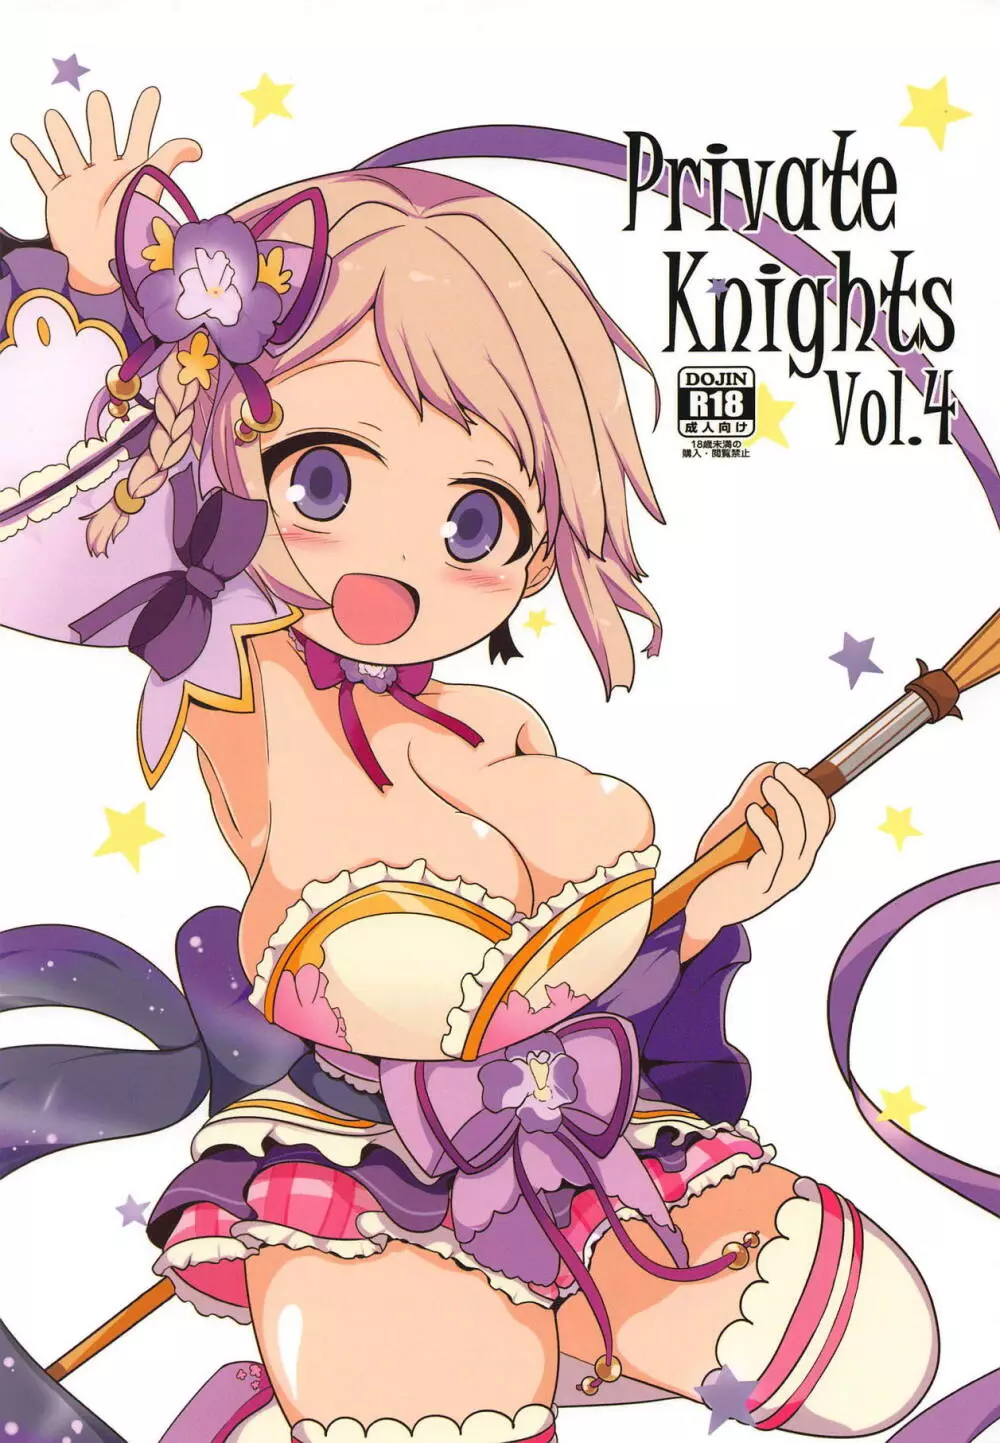 Private Knights Vol.4